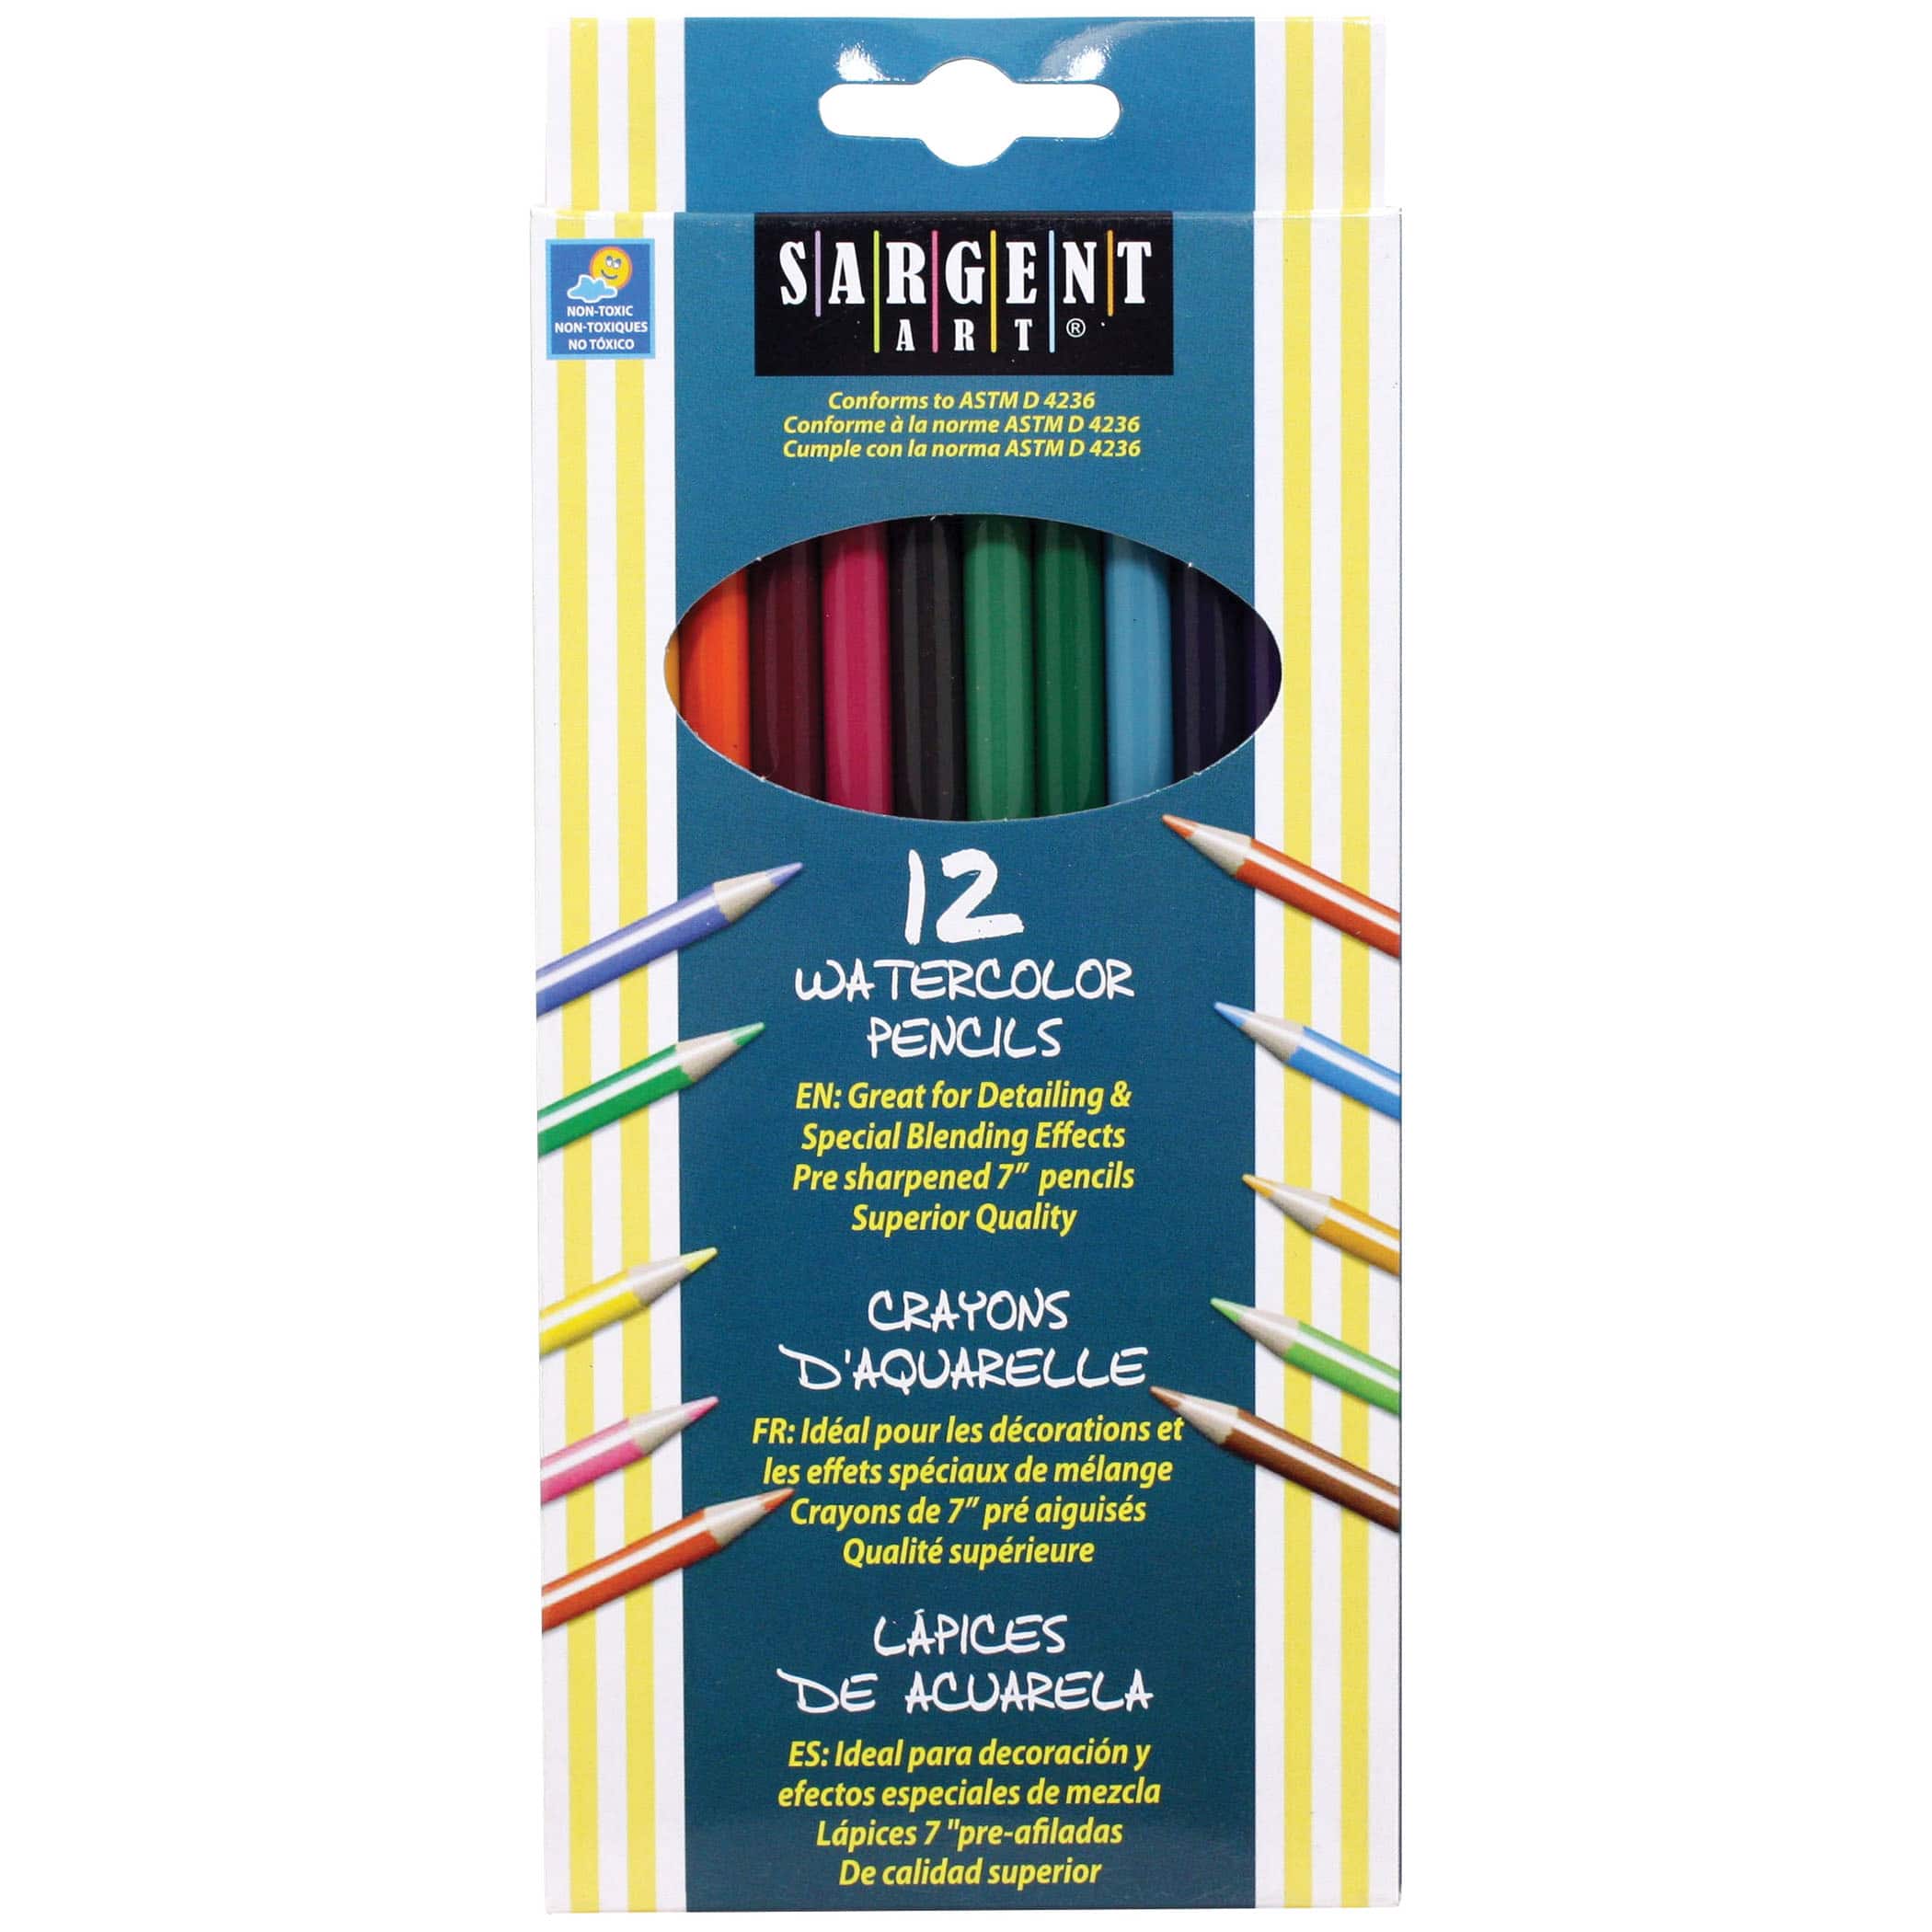 Sargent Art® Watercolor Pencils, 6 Pack Bundle